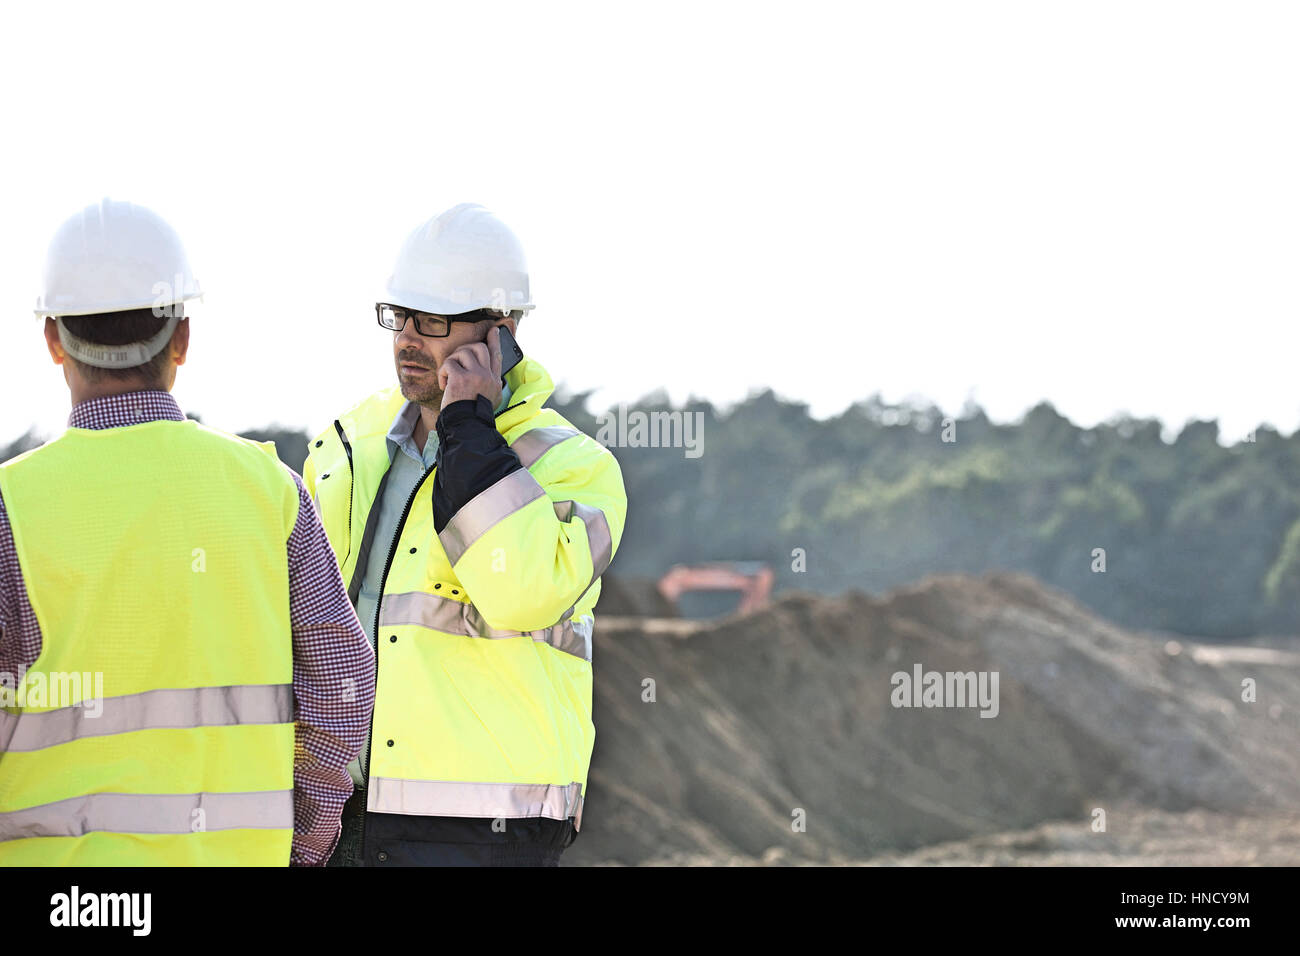 Superviseur en utilisant la téléphonie mobile en position debout avec collègue at construction site contre le ciel clair Banque D'Images